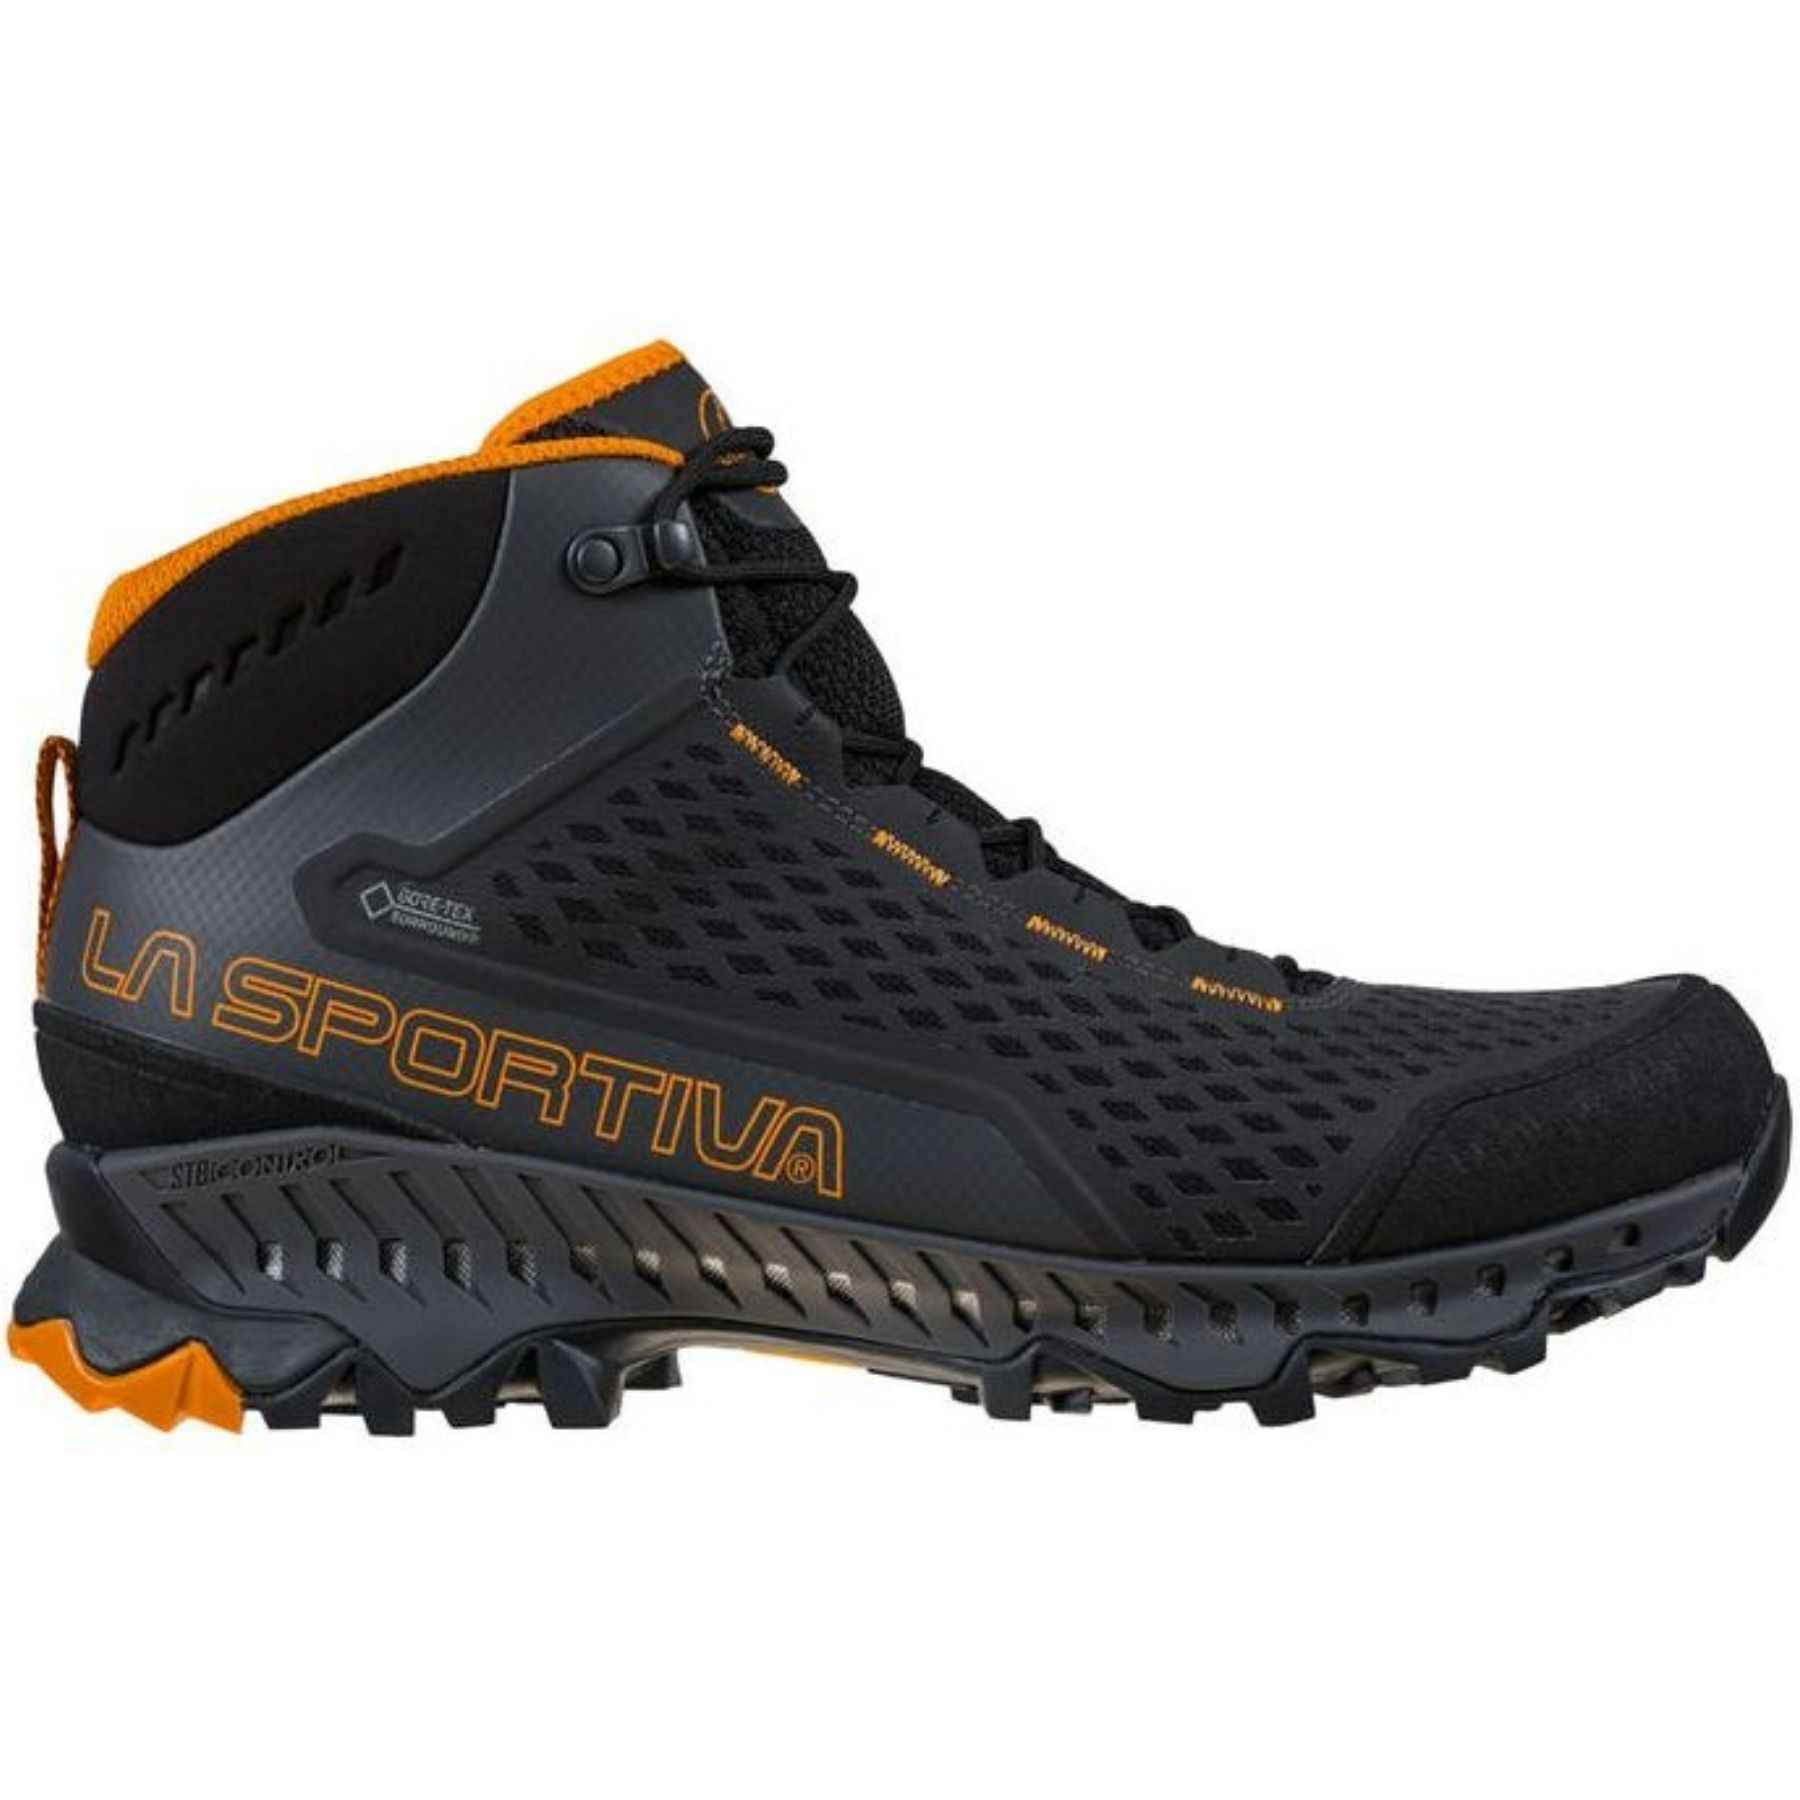 La Sportiva Stream GTX - Walking shoes - Men's